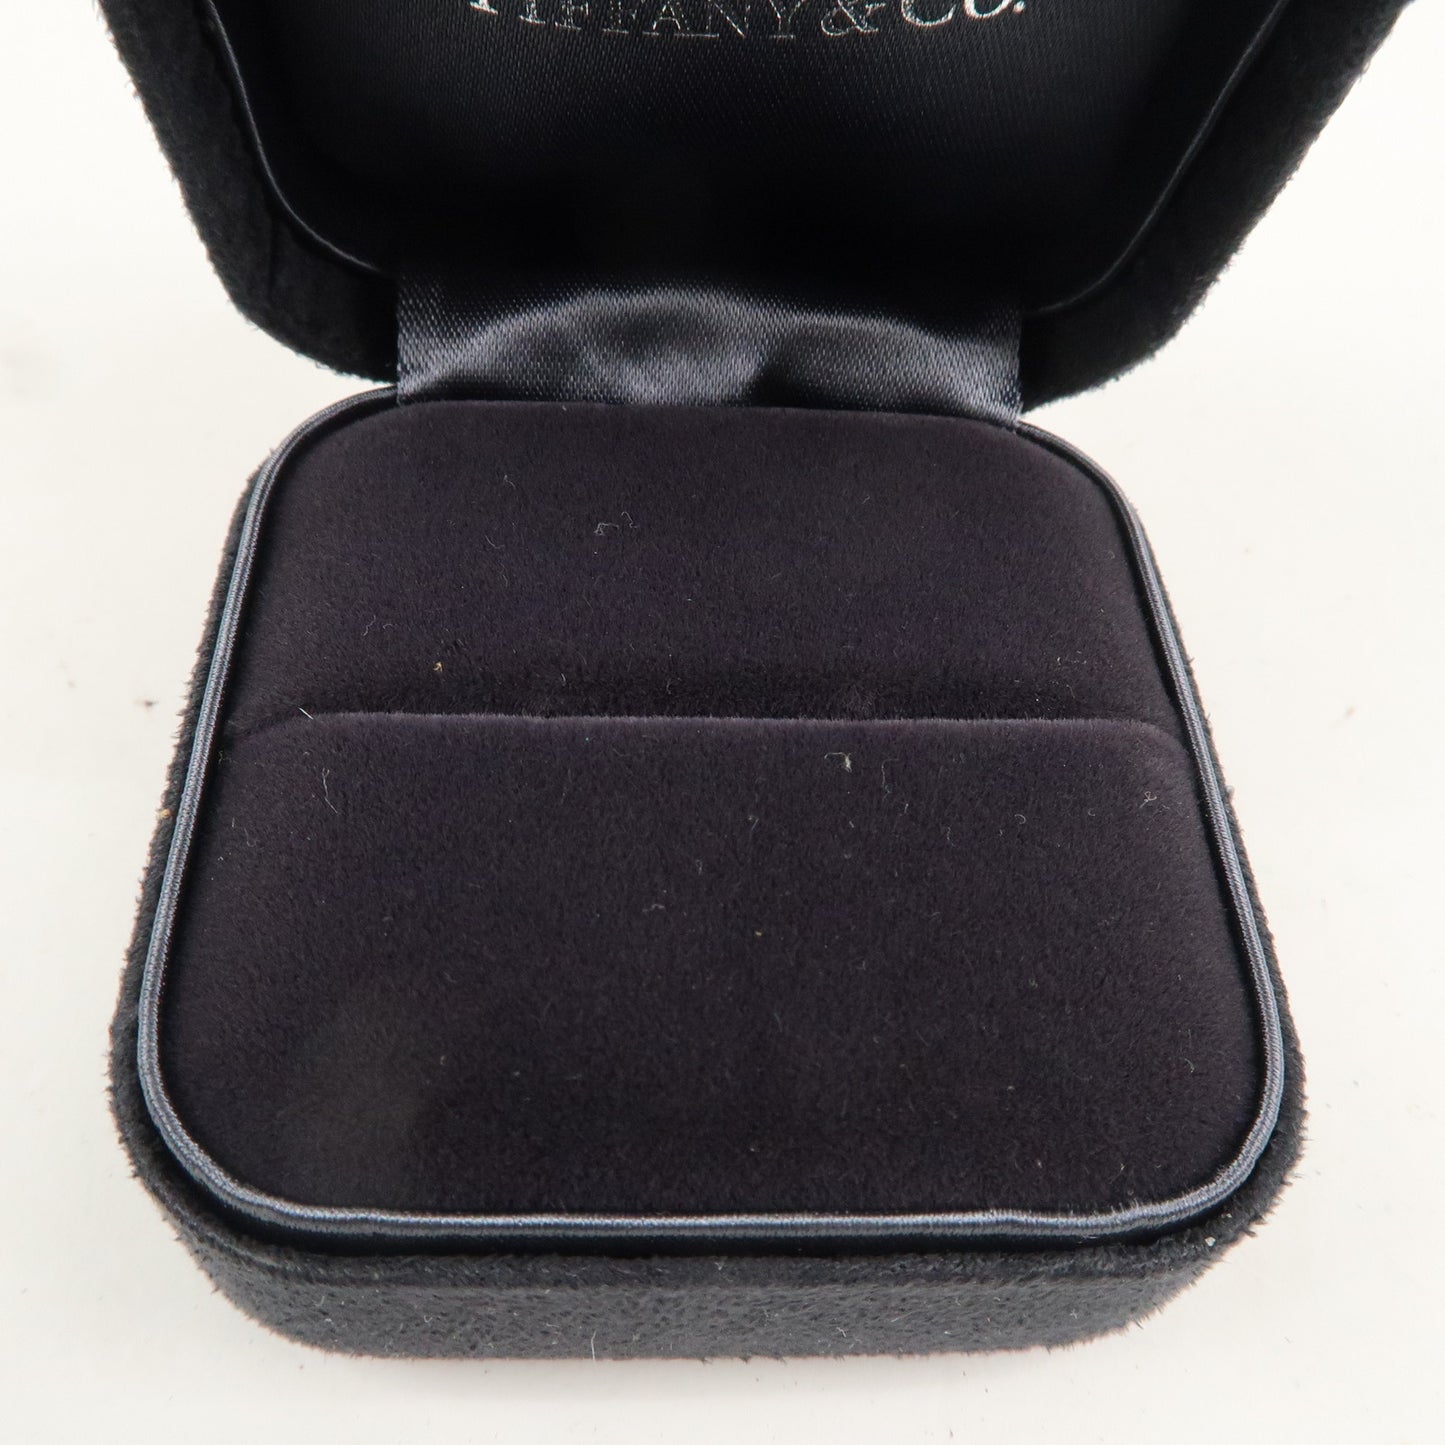 Tiffany&Co. Set of 3 Jewelry Box Ring Box Tiffany Blue